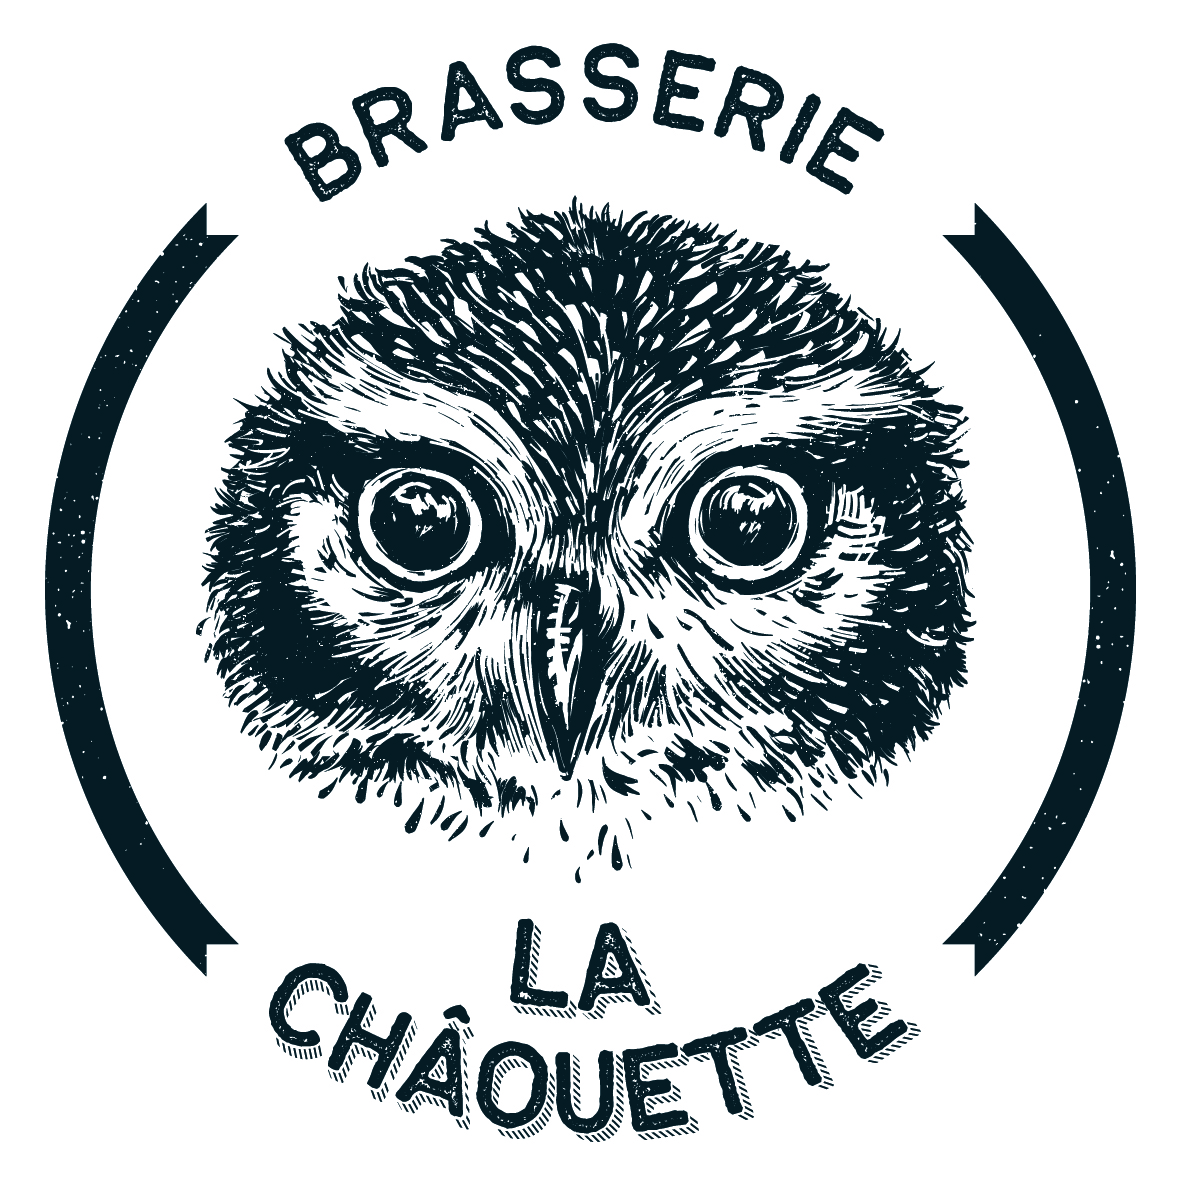 Les tireuses - Brasserie de Vauclair - La Choue